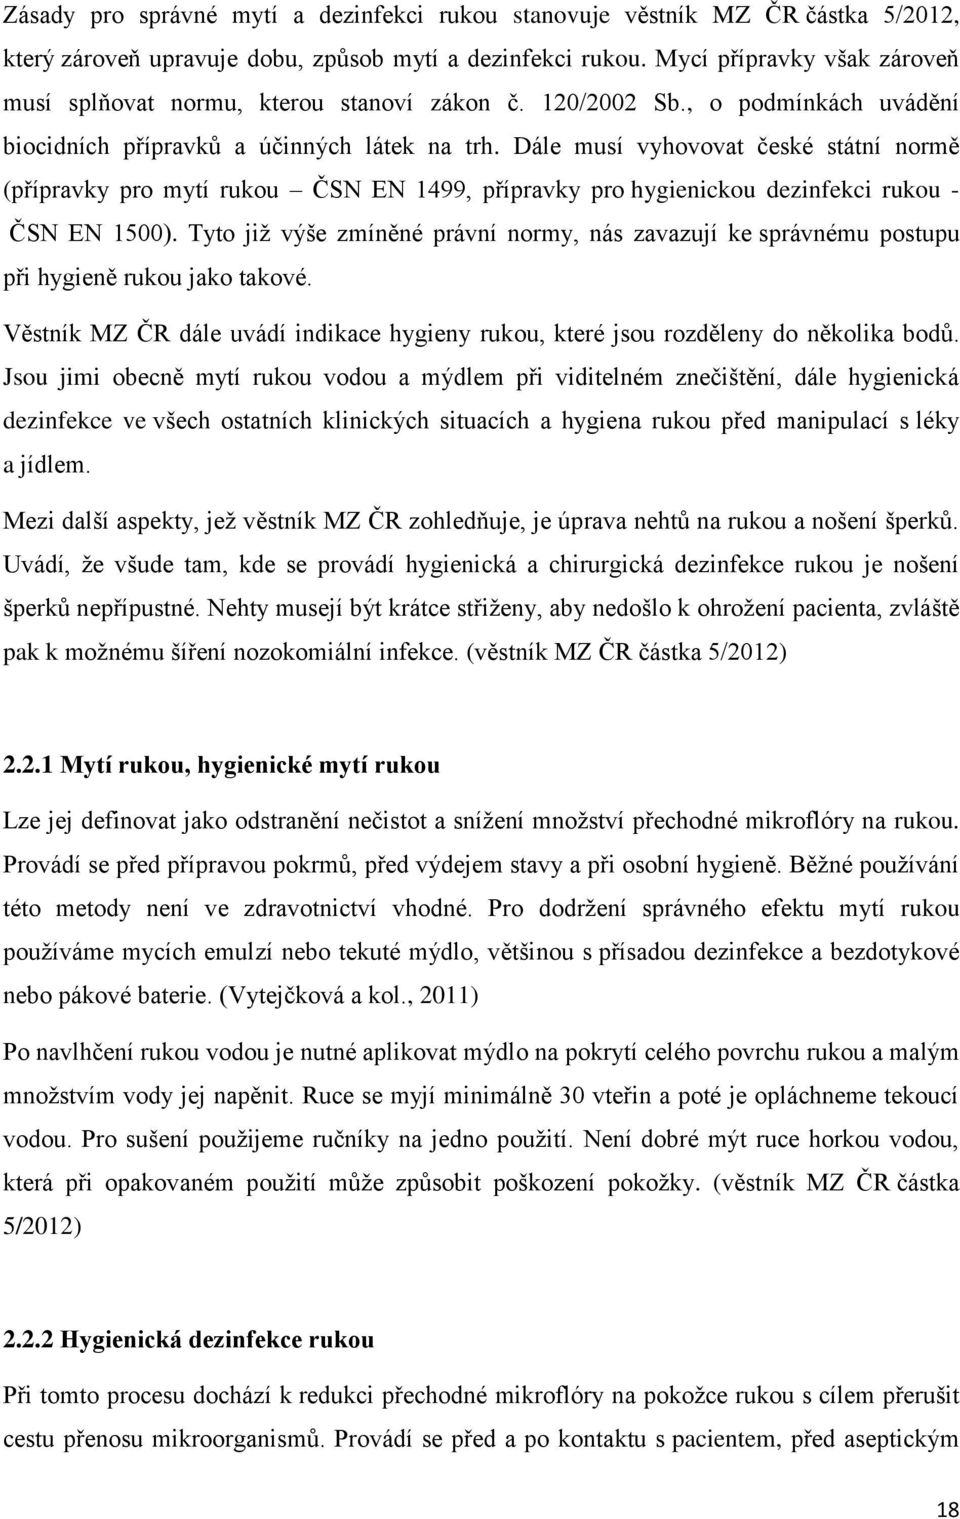 Dále musí vyhovovat české státní normě (přípravky pro mytí rukou ČSN EN 1499, přípravky pro hygienickou dezinfekci rukou - ČSN EN 1500).